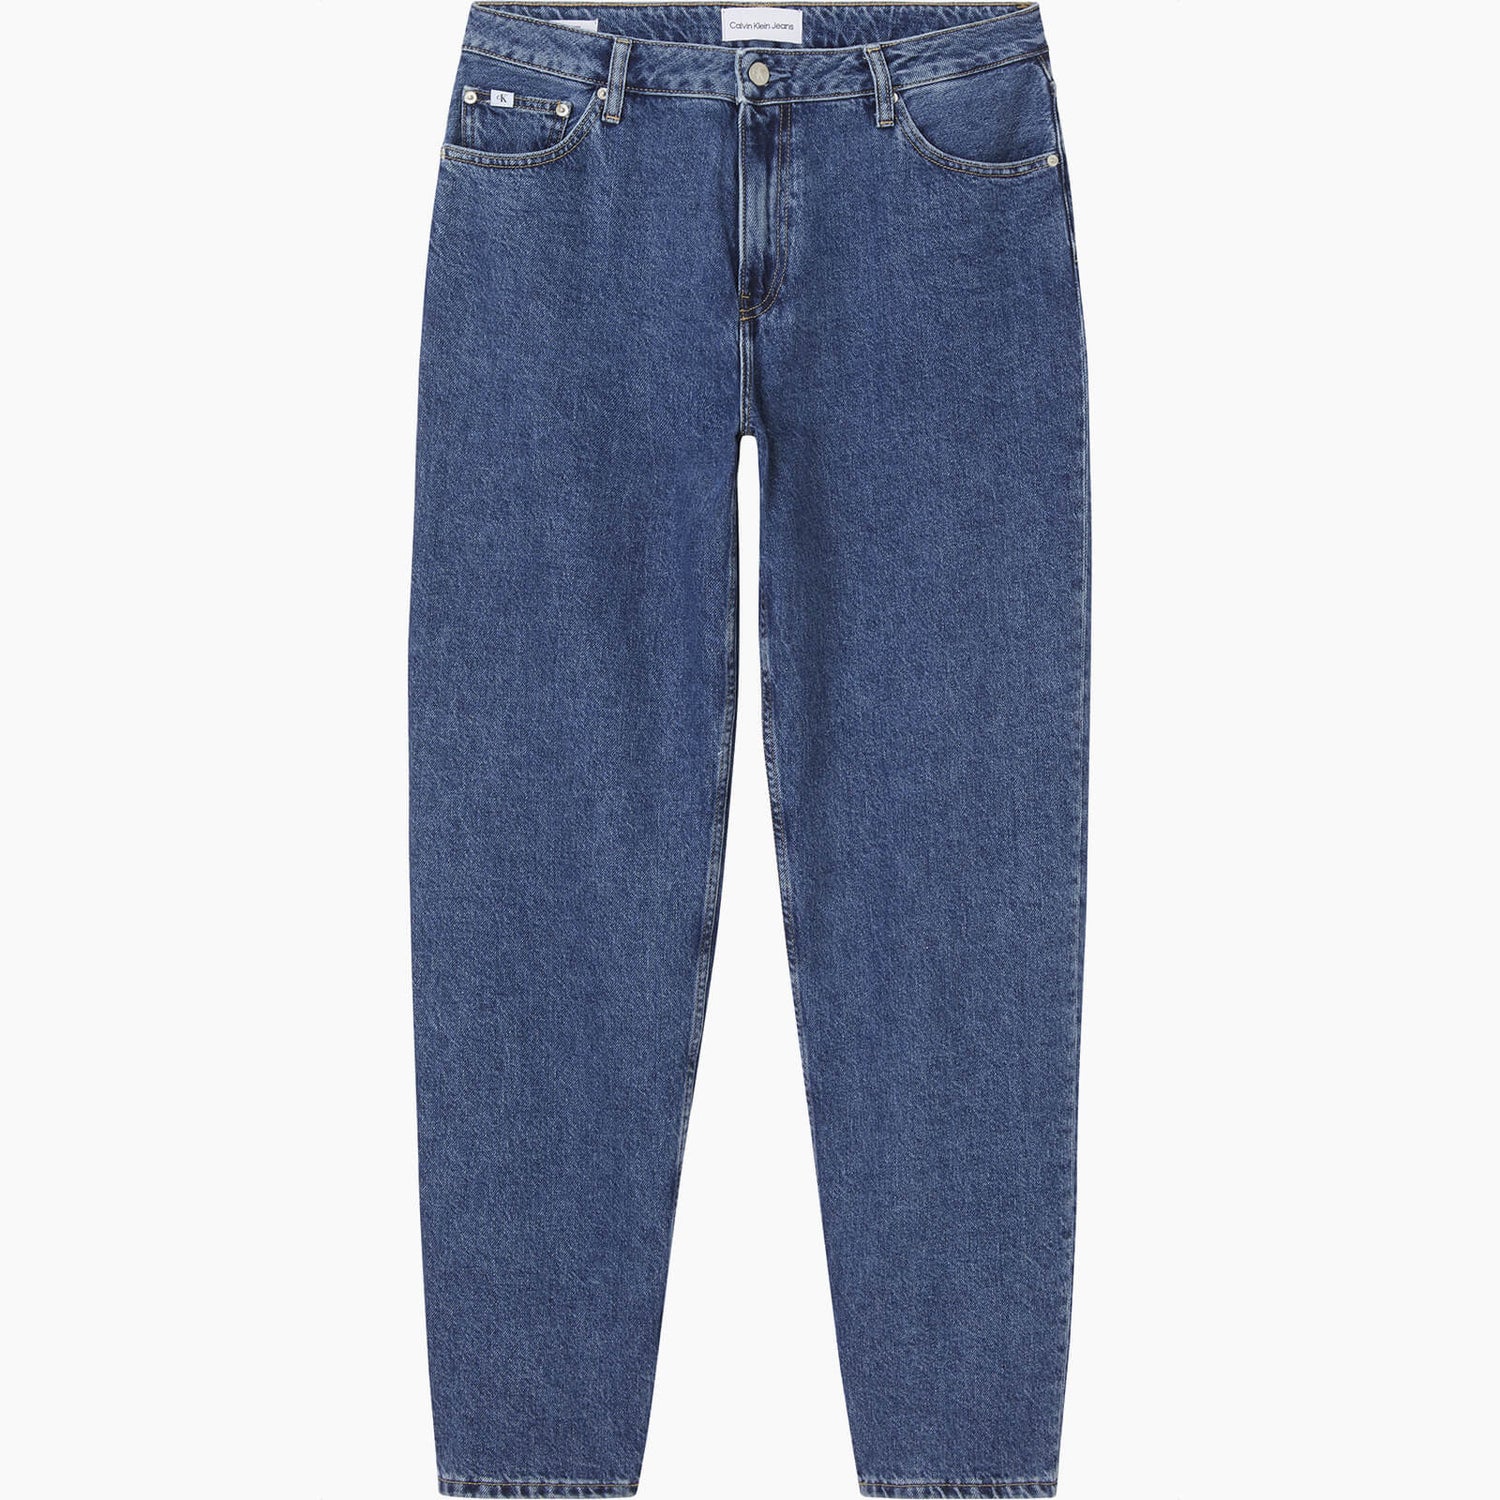 Calvin Klein Jeans Women's 90'S Straight Jeans - Denim Medium - W27